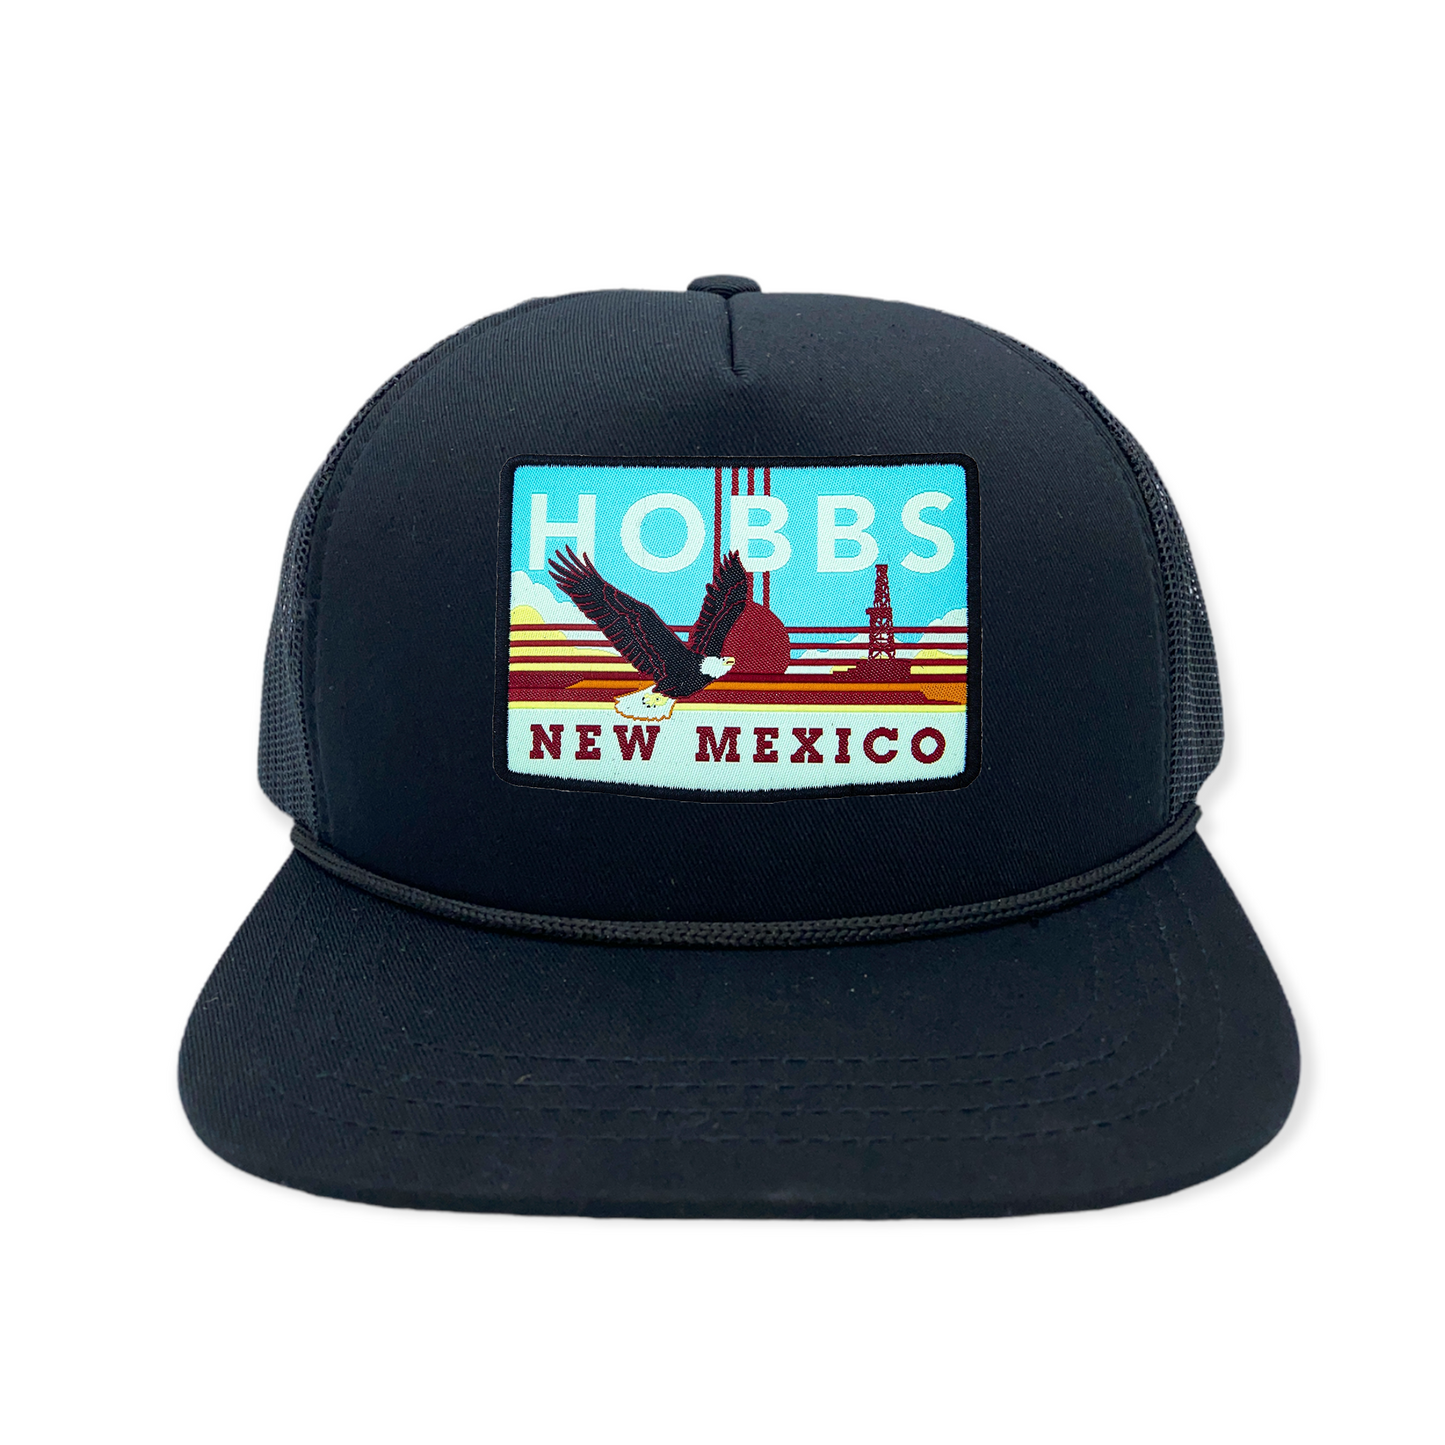 Hobbs, NM Trucker